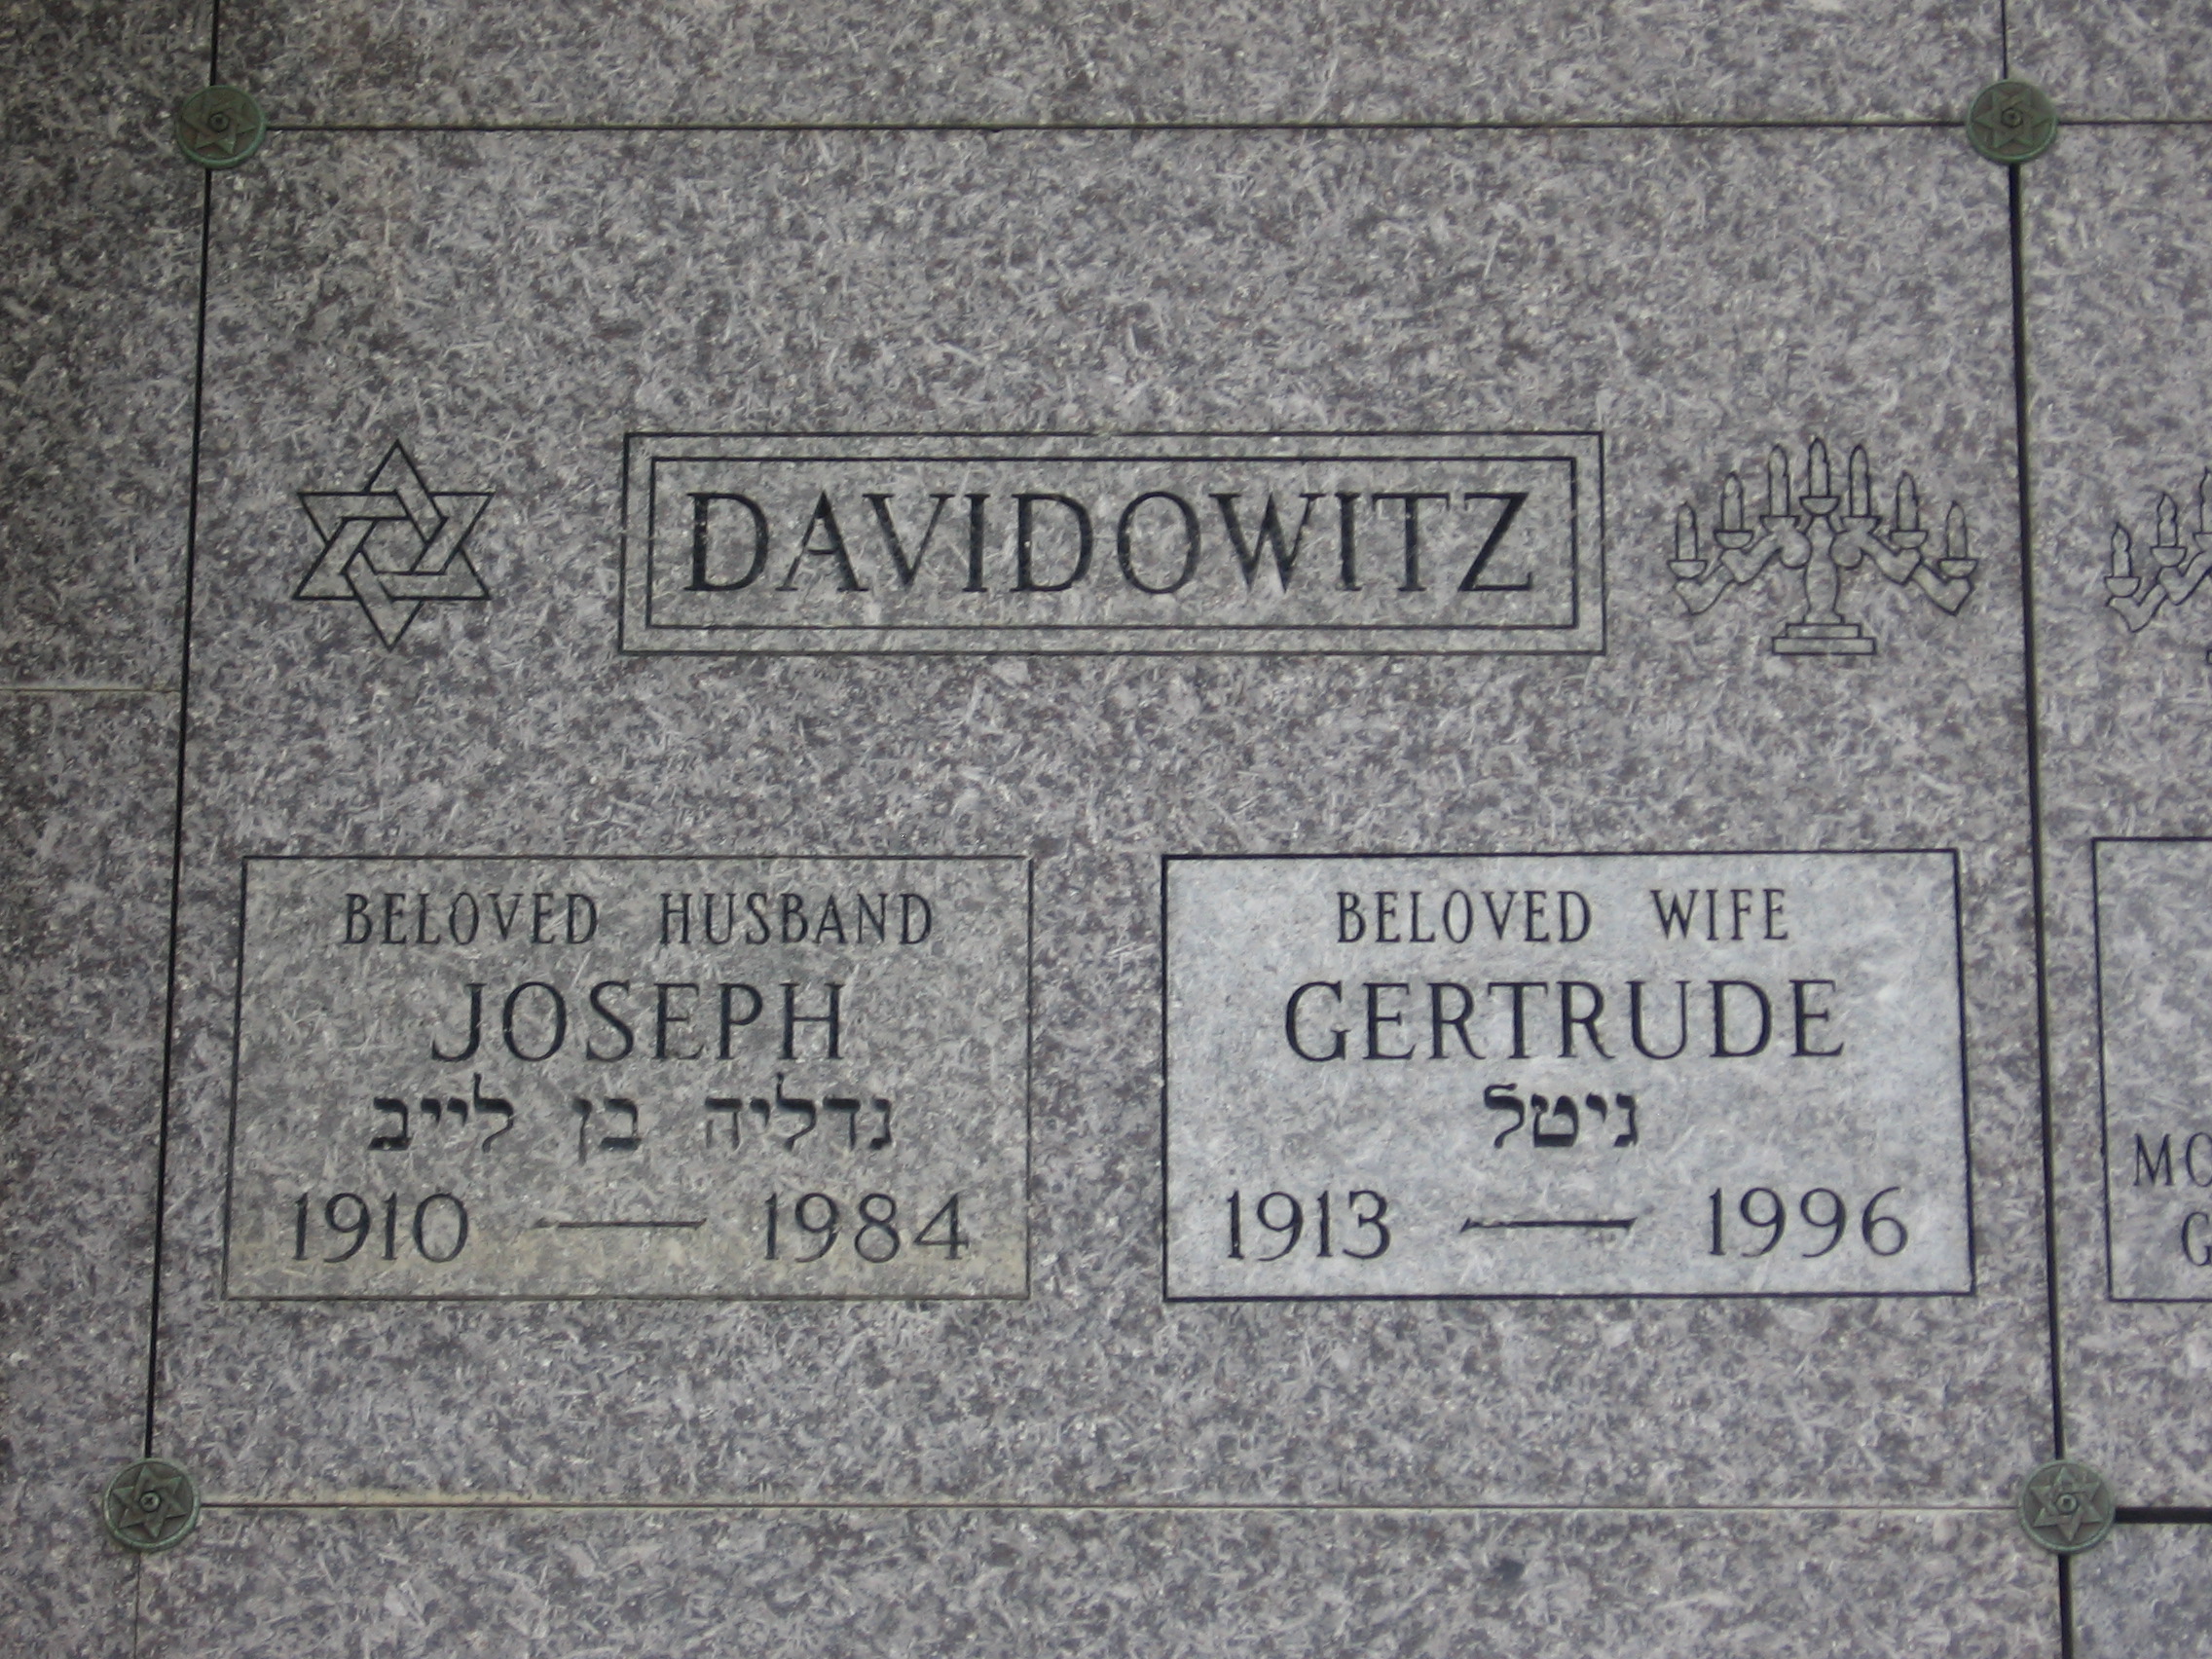 Joseph Davidowitz